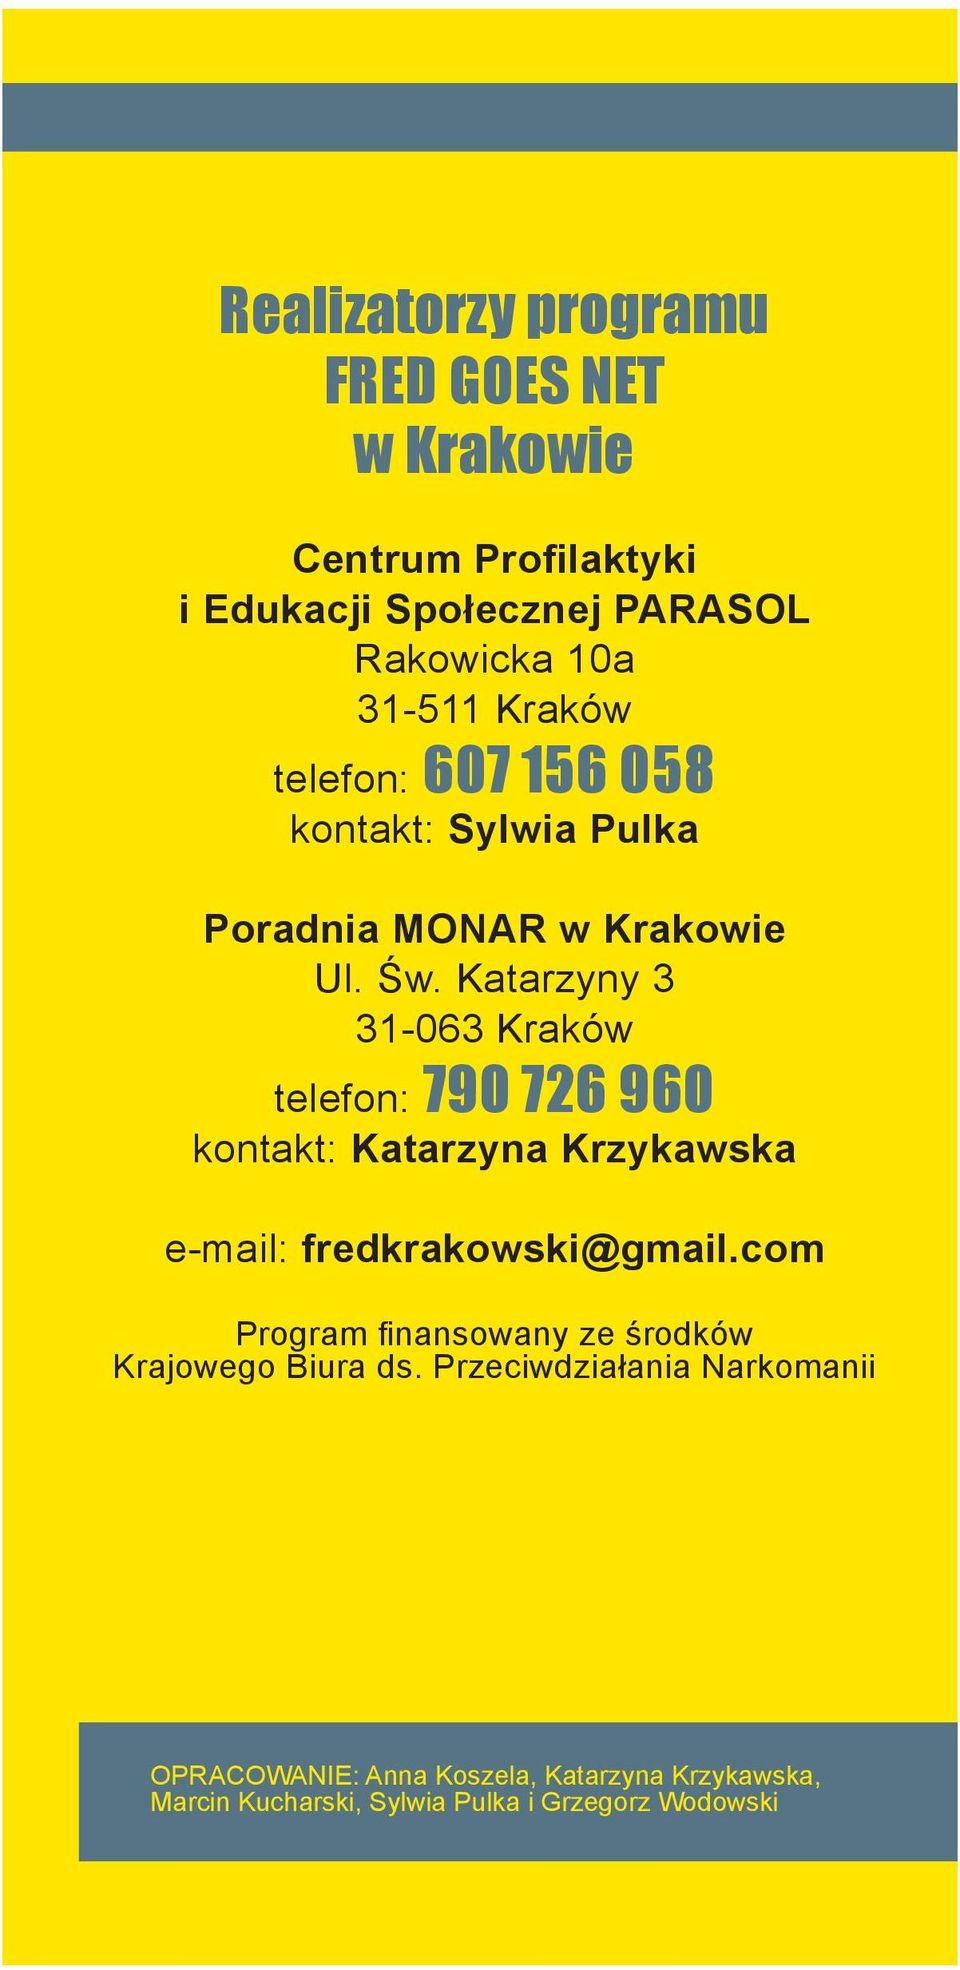 Katarzyny 3 31-063 Kraków telefon: 790 726 960 kontakt: Katarzyna Krzykawska e-mail: fredkrakowski@gmail.